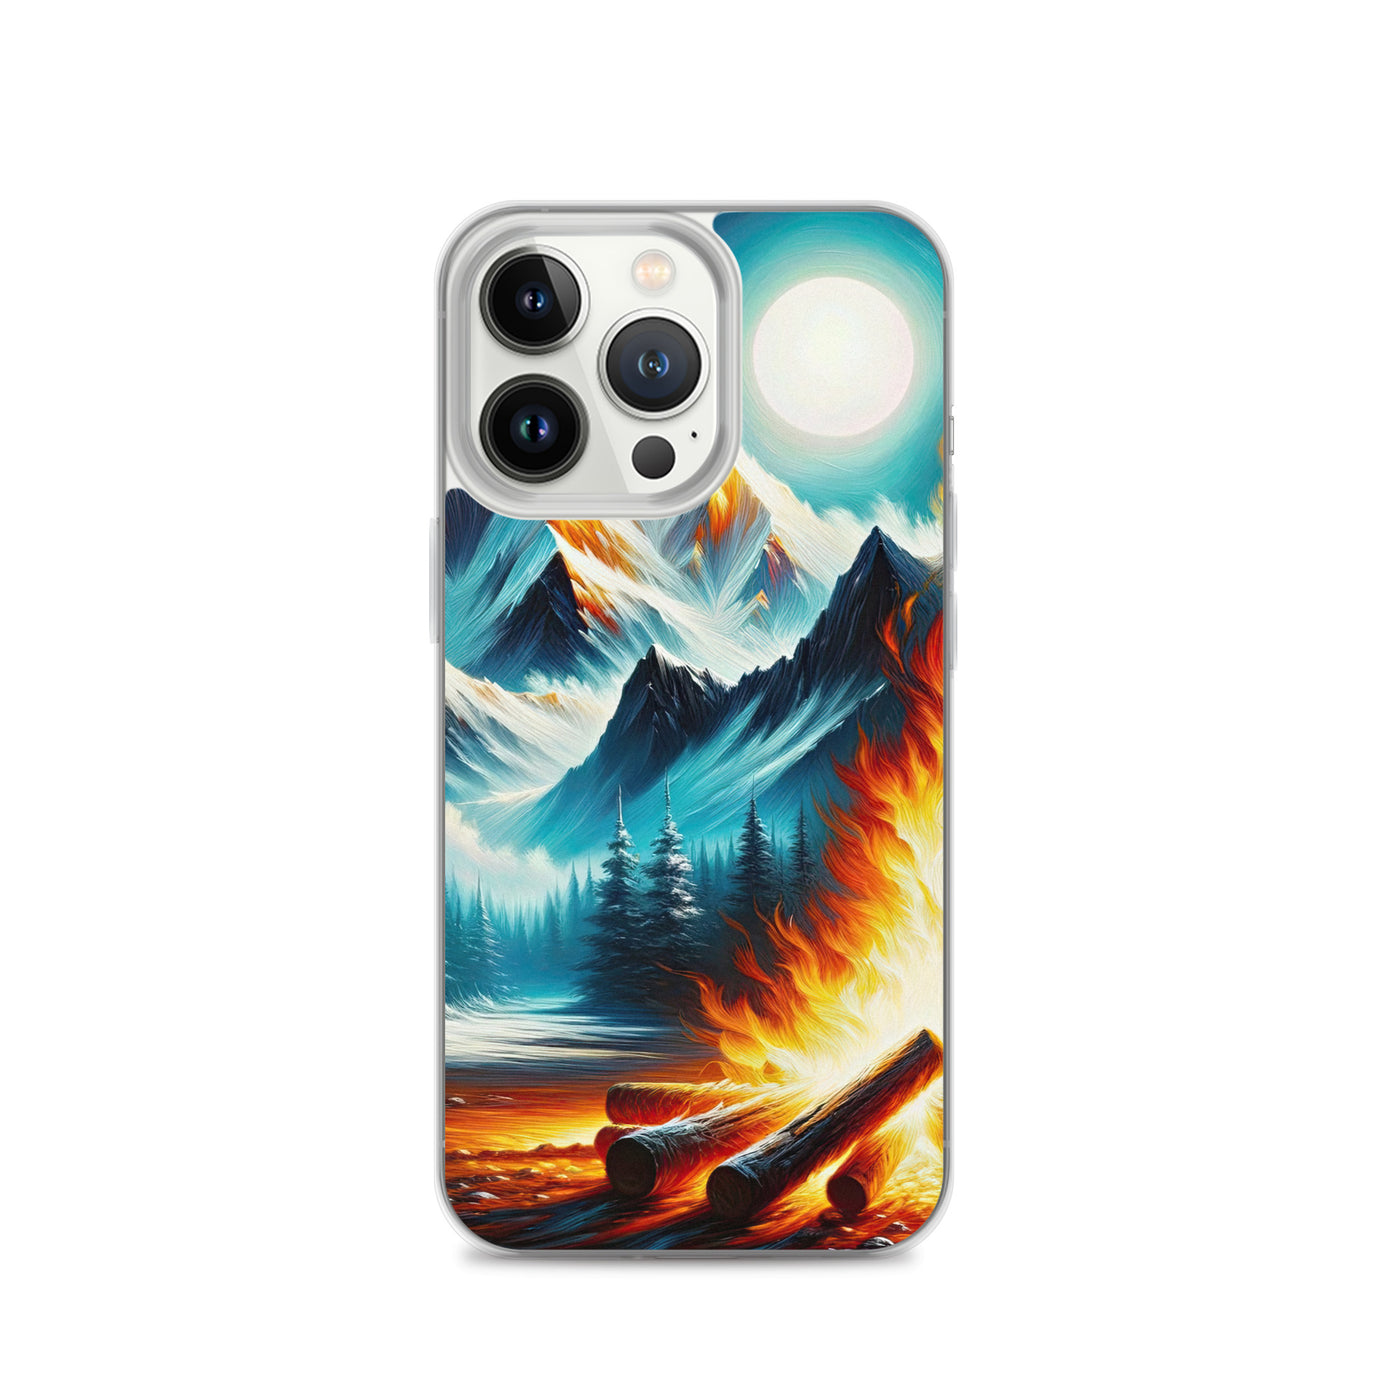 Ölgemälde von Feuer und Eis: Lagerfeuer und Alpen im Kontrast, warme Flammen - iPhone Schutzhülle (durchsichtig) camping xxx yyy zzz iPhone 13 Pro